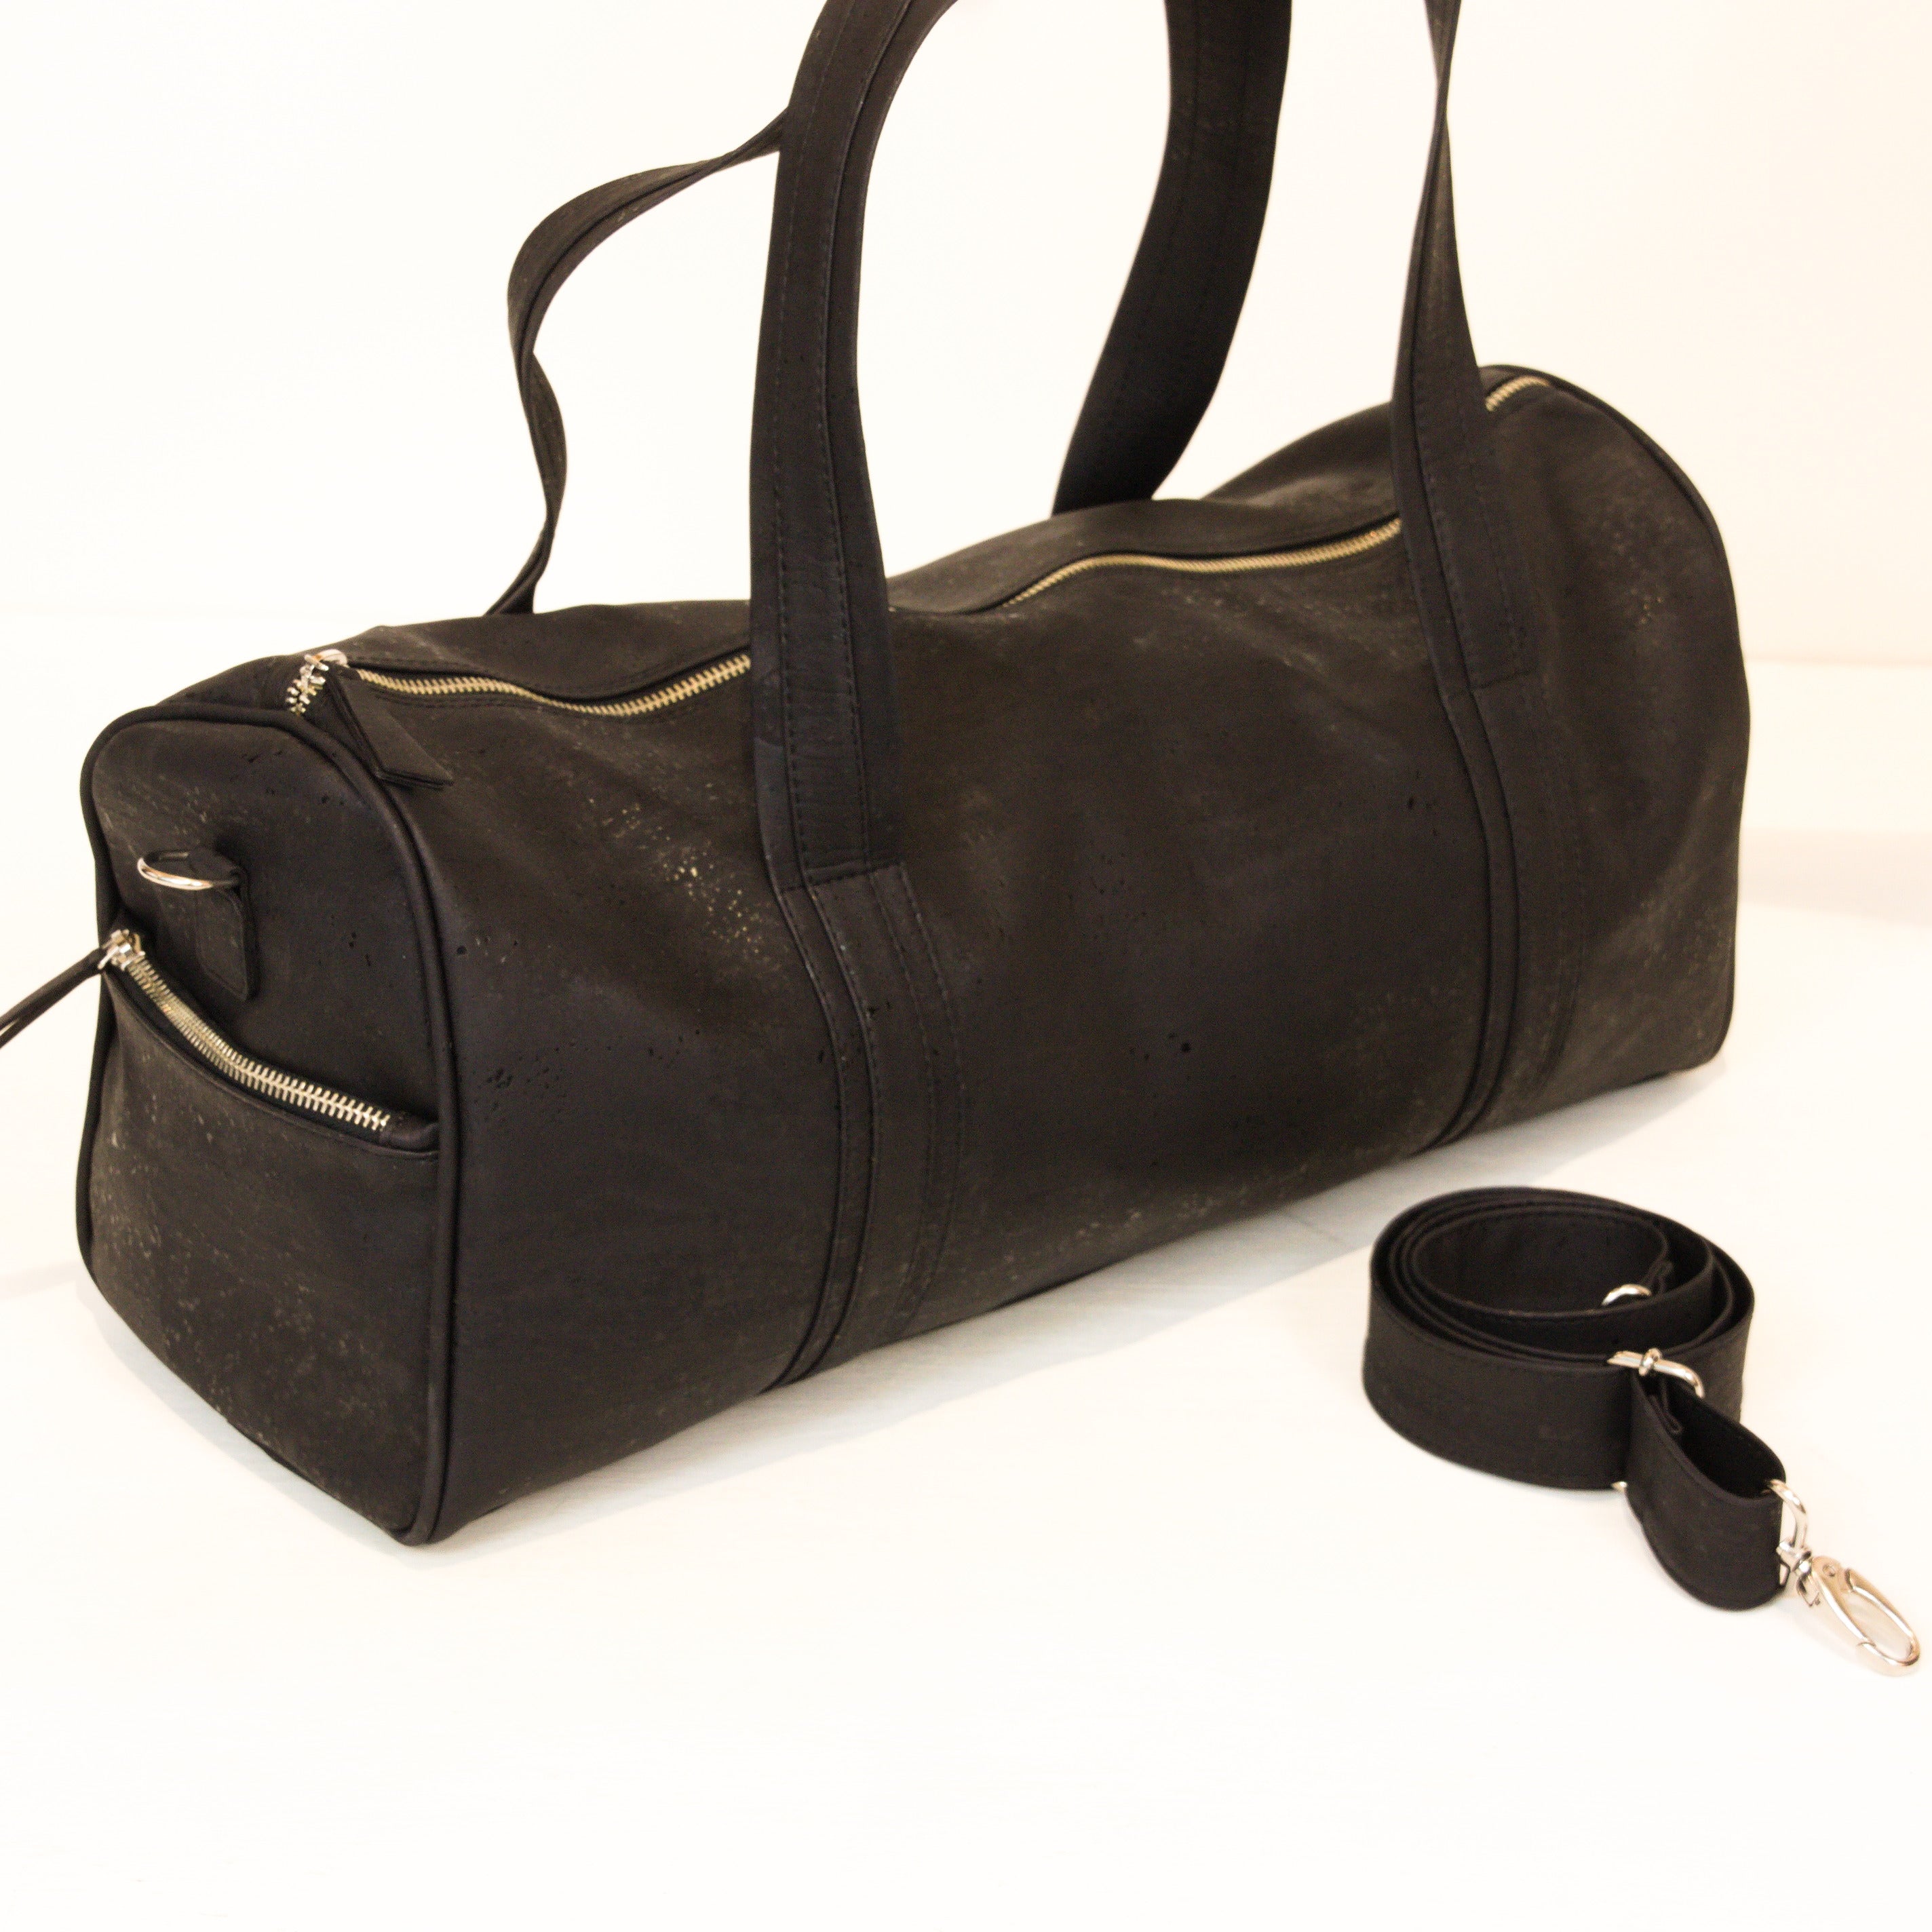 Kork Sporttasche für Männer und Frauen * in 2 Farben * vegan * abwaschbar * antiseptisch * sehr leicht * handgefertigtes Sportbag